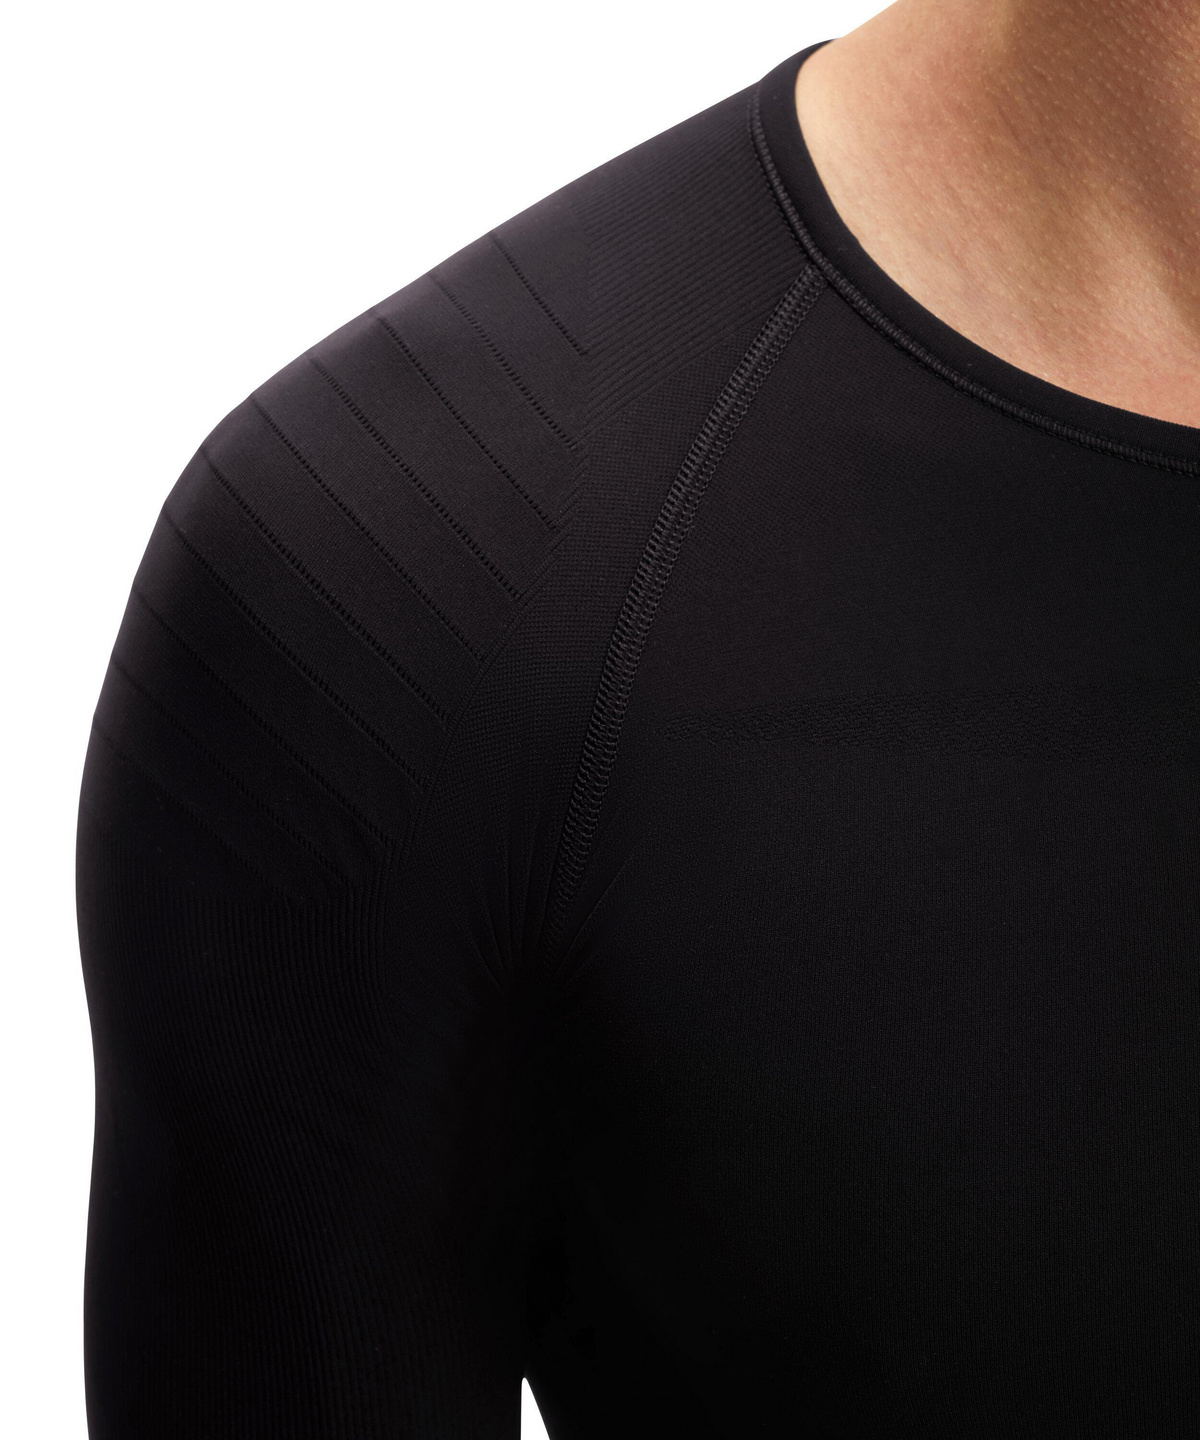 Farben versch Sport Performance Material 1 Stück Langarm-Shirt in körpernaher Passform FALKE Herren Long Sleeve Shirt Warm Tight Fit Größe S-XXL